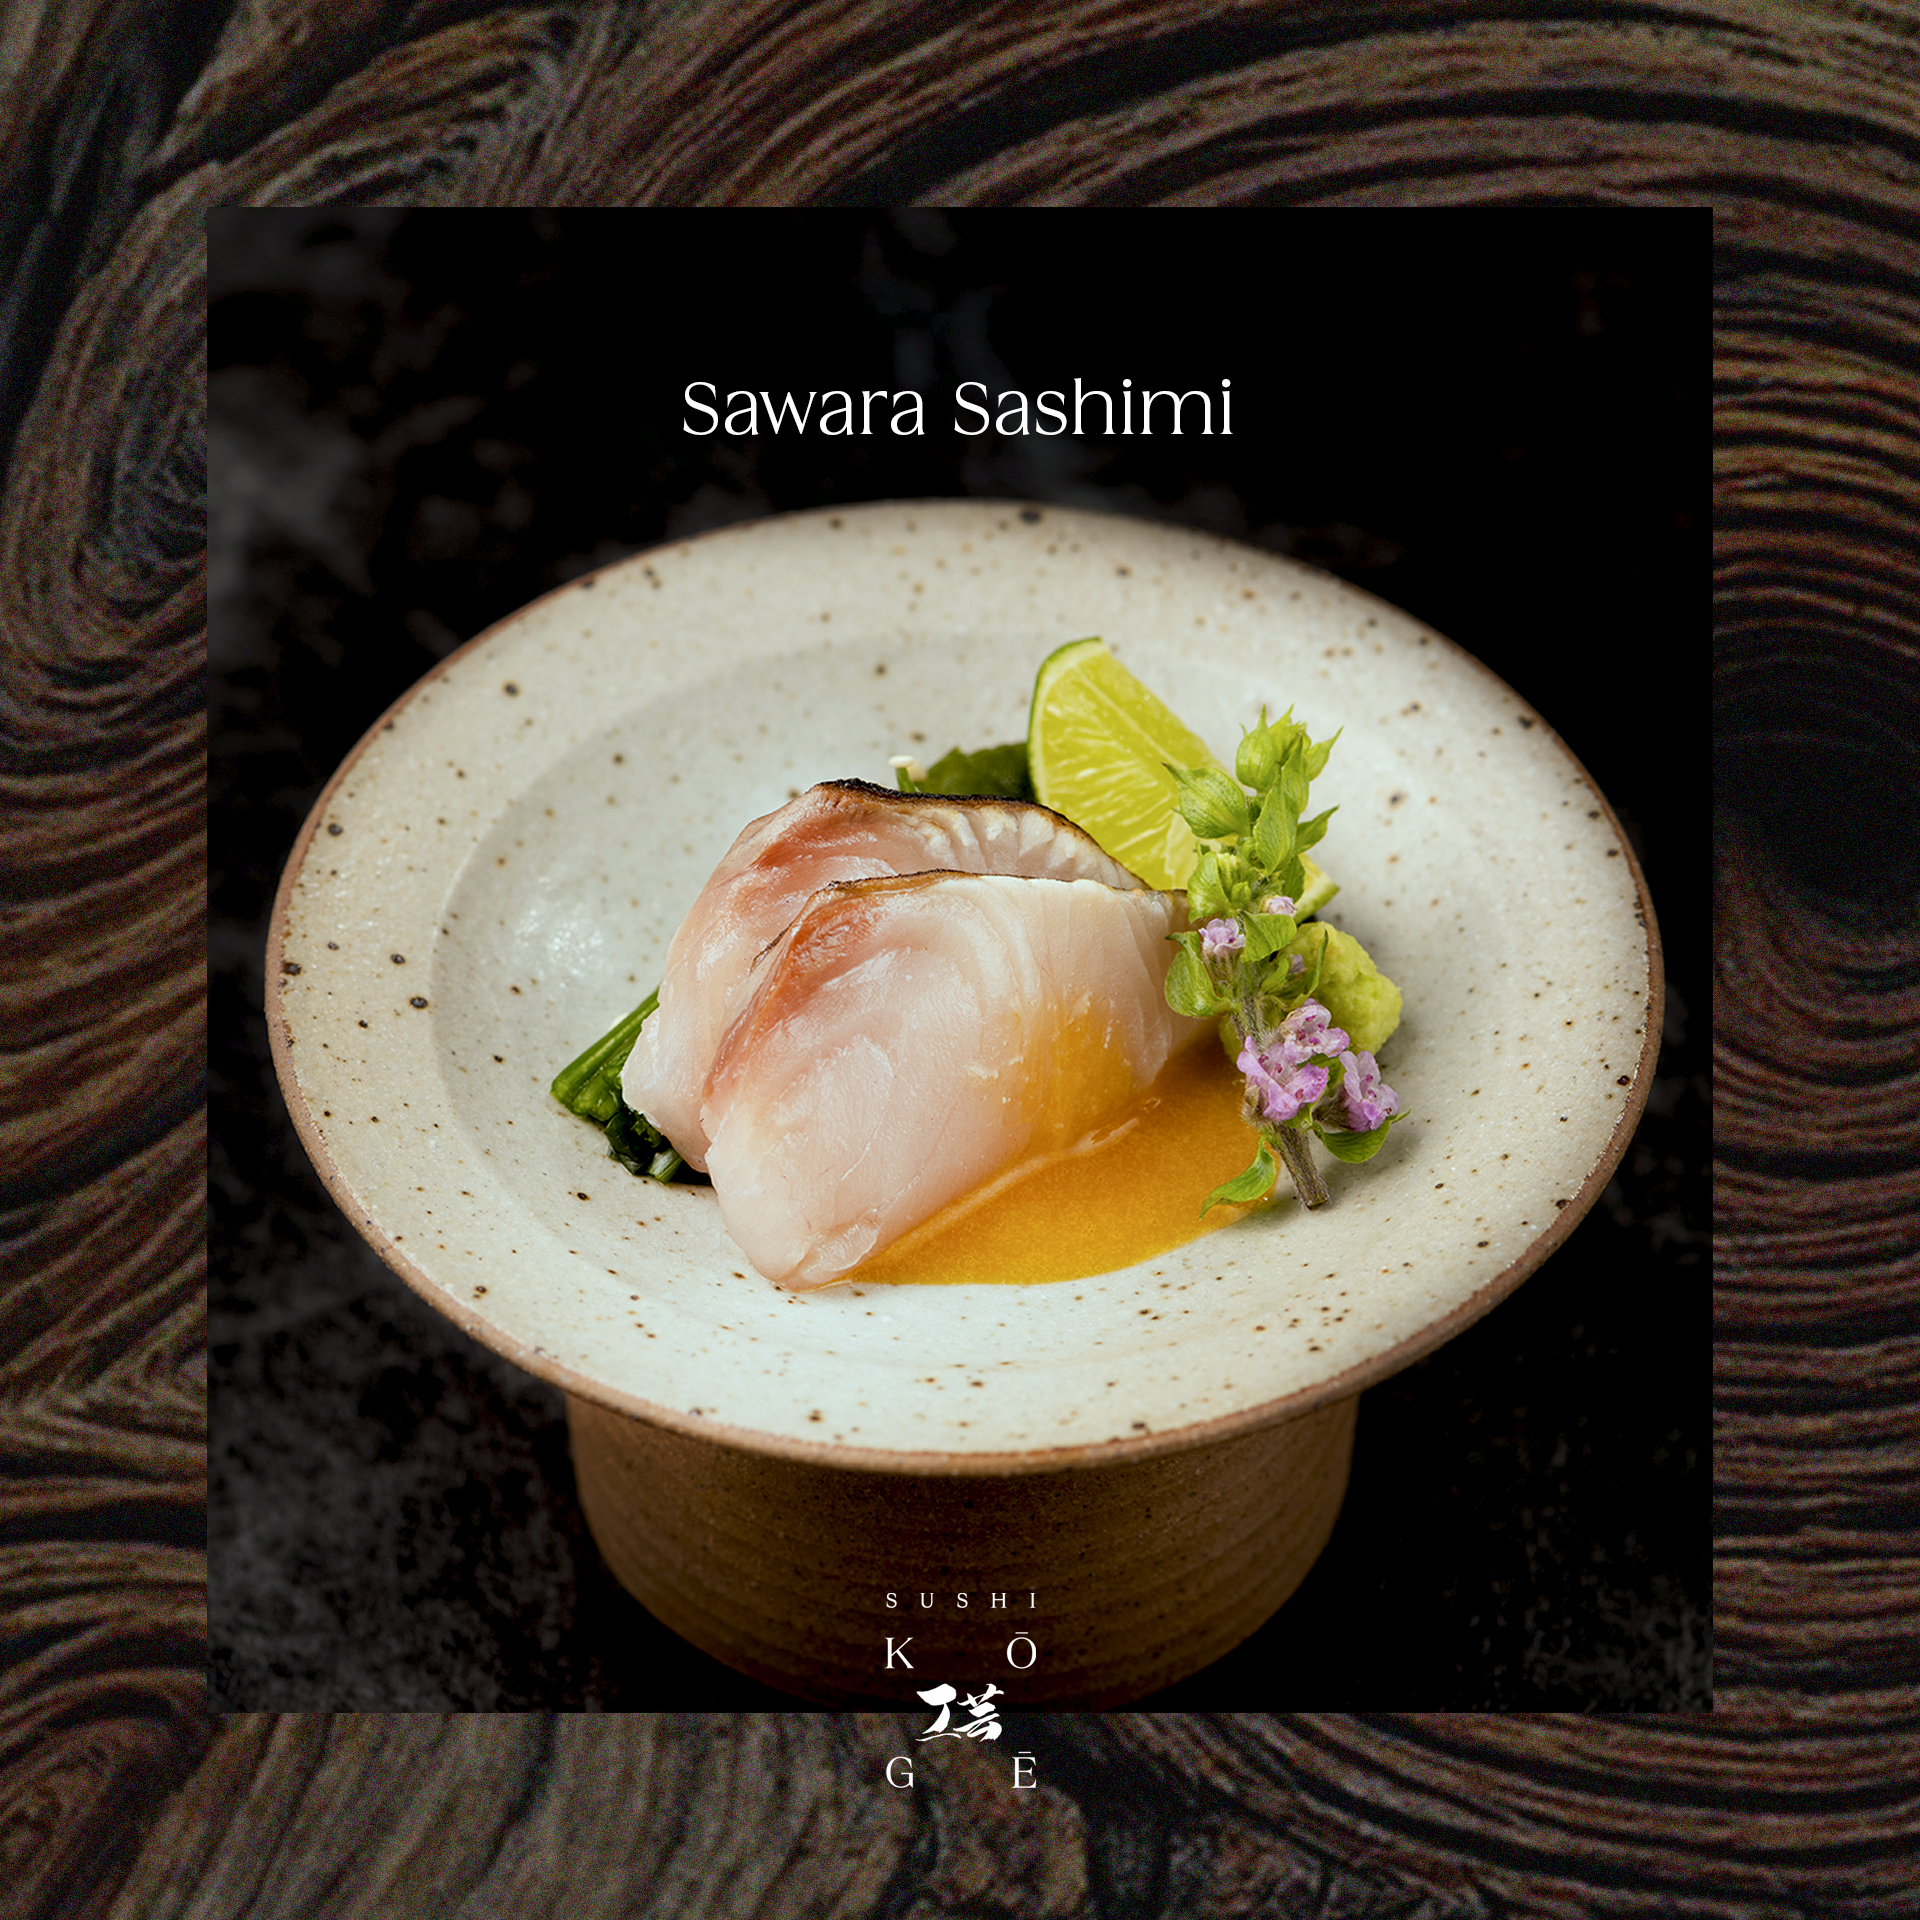 Sawara Sashimi